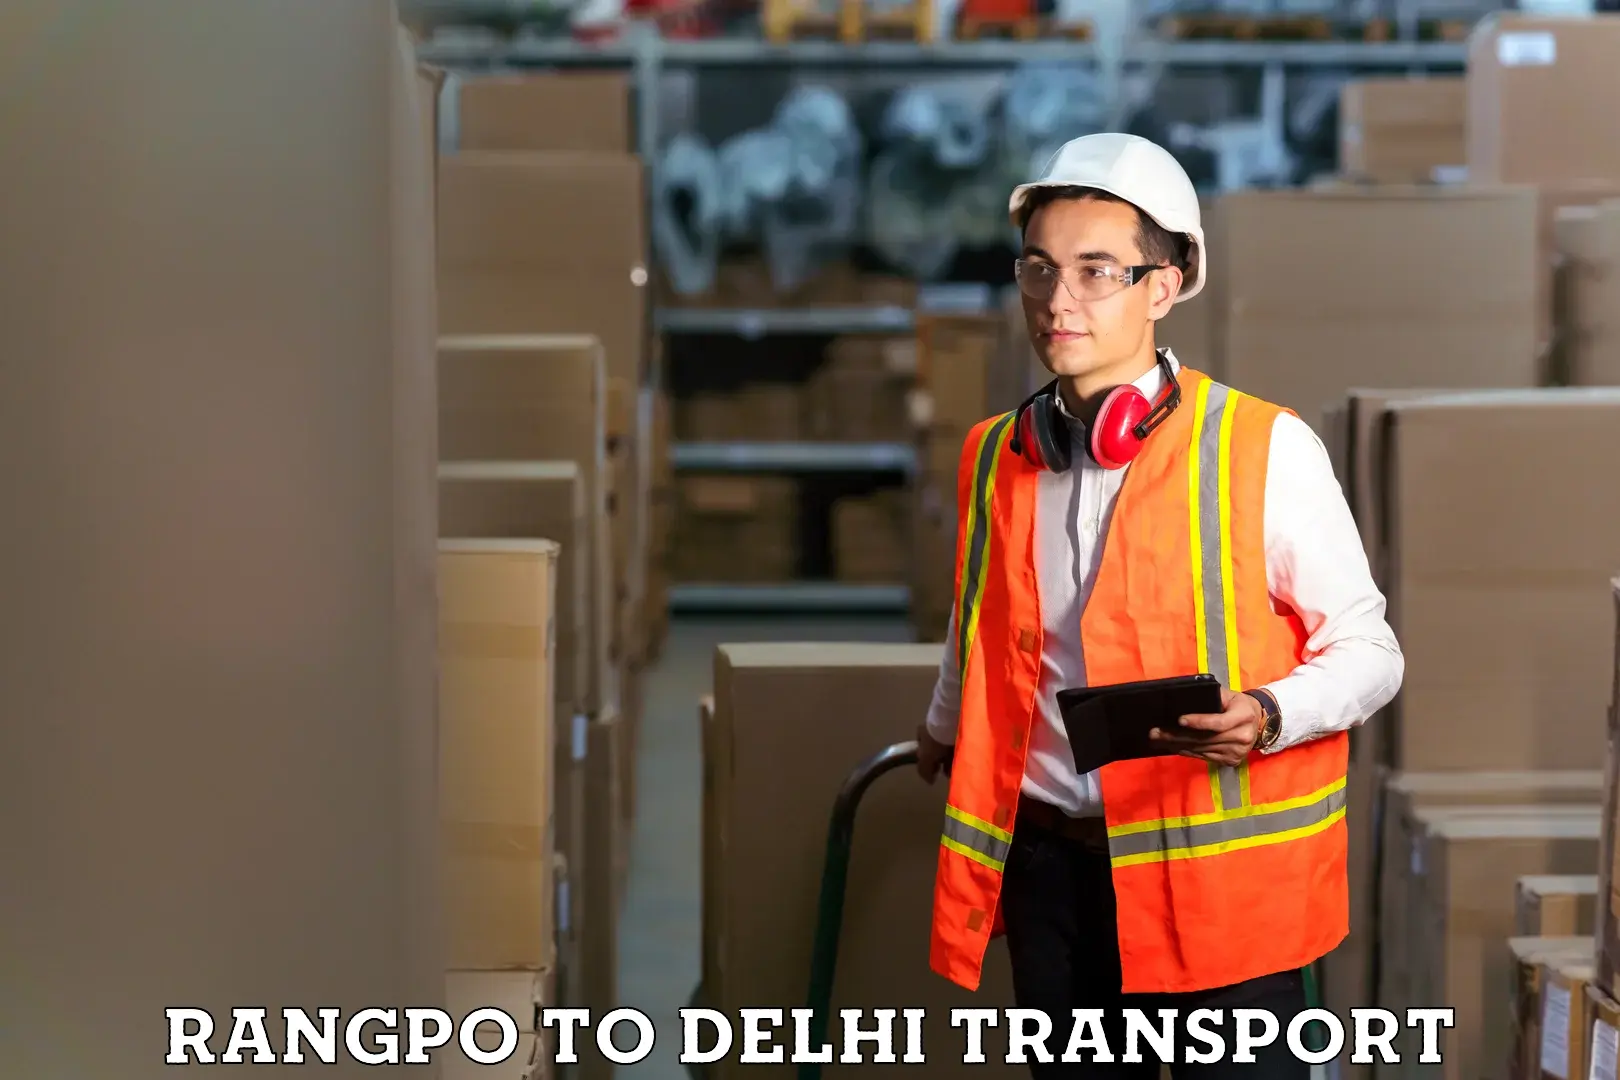 Domestic transport services Rangpo to Delhi